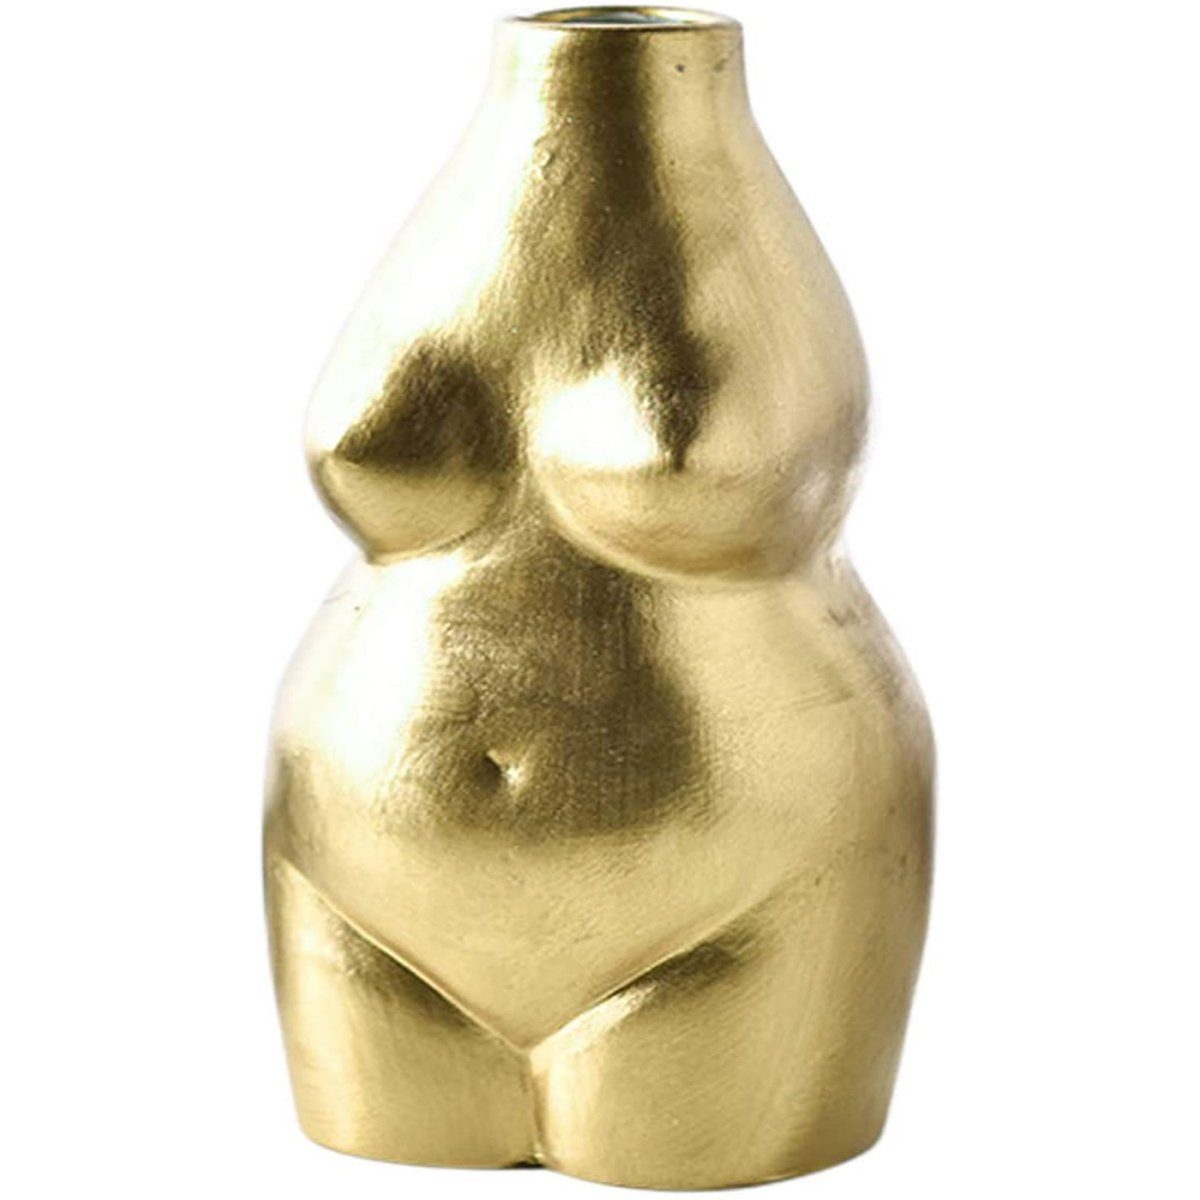 Jormftte Dekovase Weiblich Körper Vase Kunst Design,Keramik Blumentopf Statue,für Deko Gold | Dekovasen